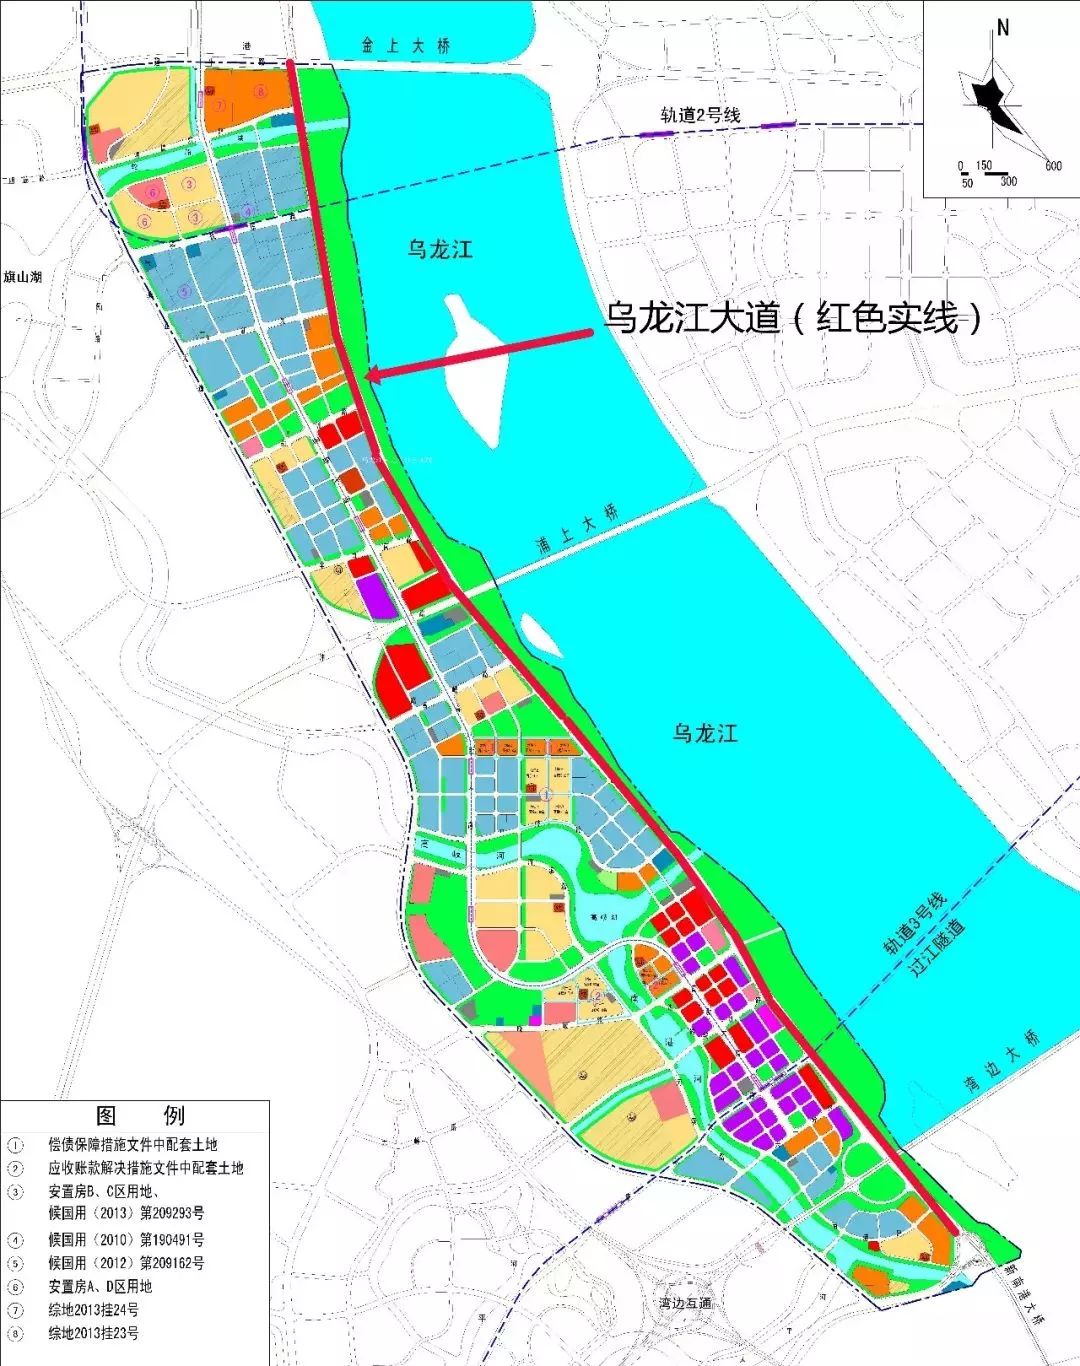 福州高新区配套再升级 乌龙江大道一期通车!公园+道路